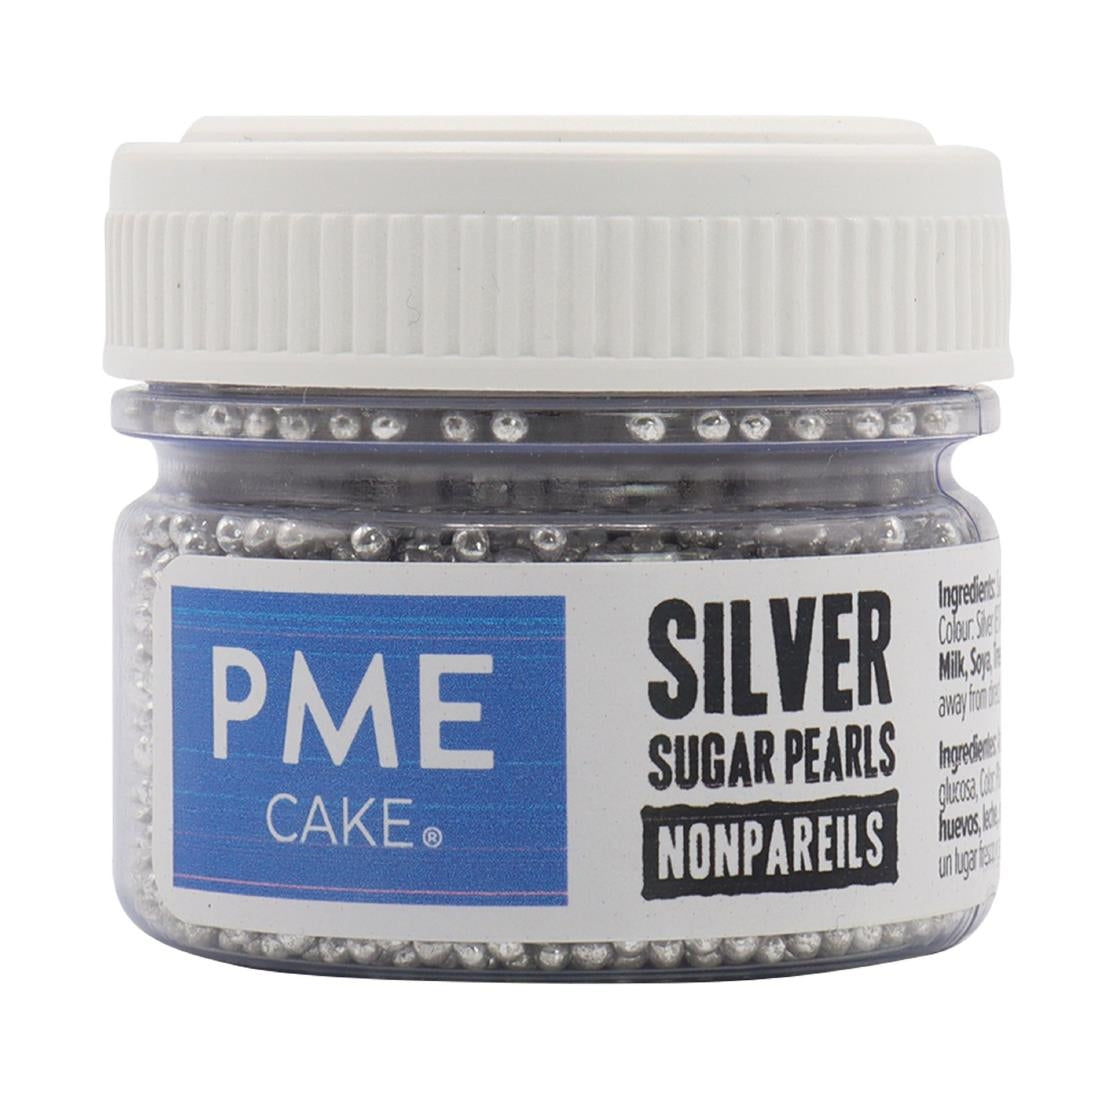 HU229 PME Silver Sugar Pearls 25g - Nonpareils